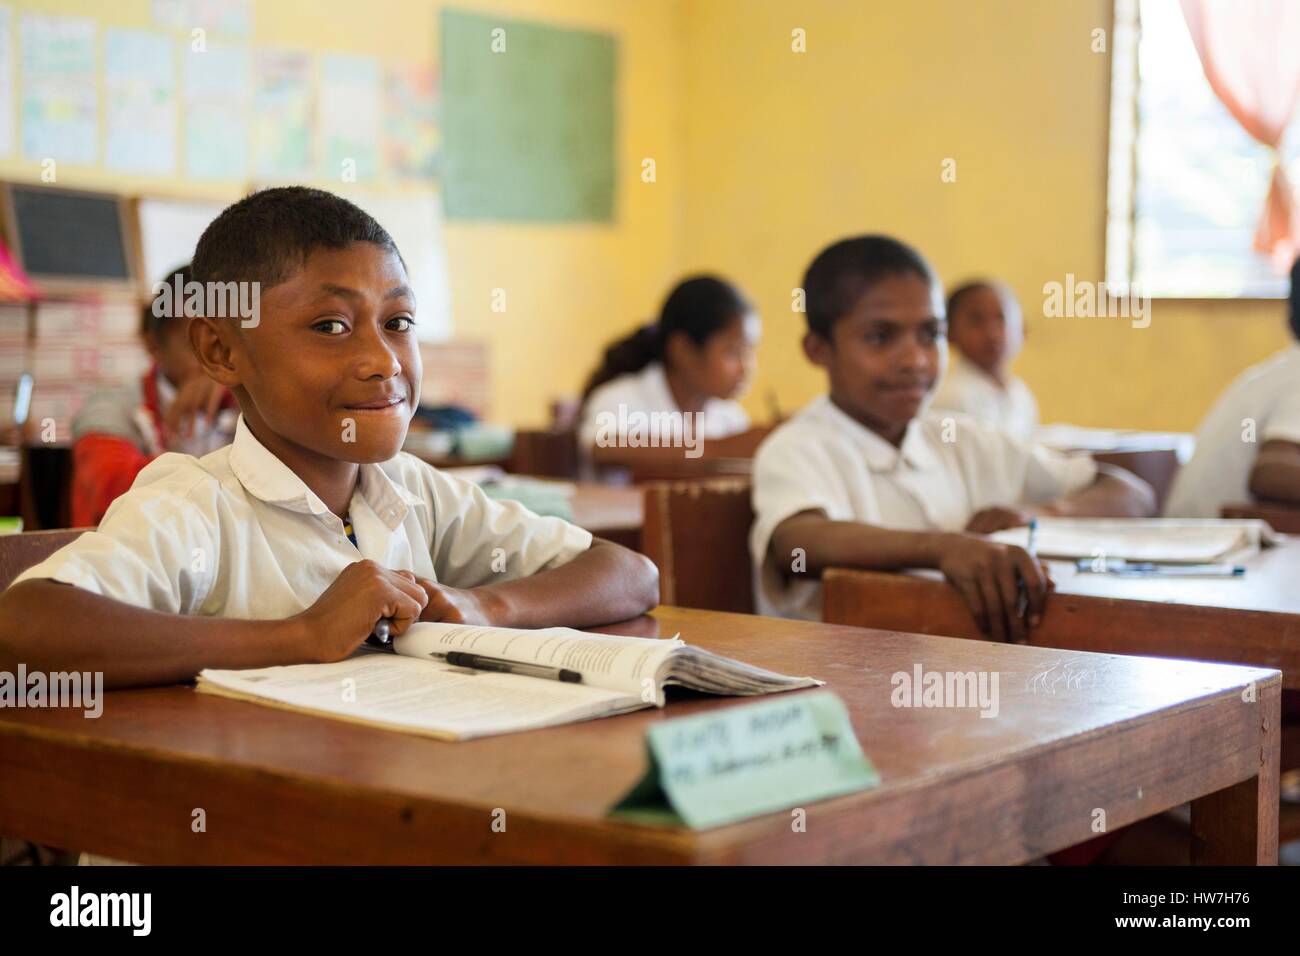 Indonesien, Ost-Nusa Tenggara, West-Timor, South Central Timor Regency, Fatumnasi, Kinder in der Schule Stockfoto